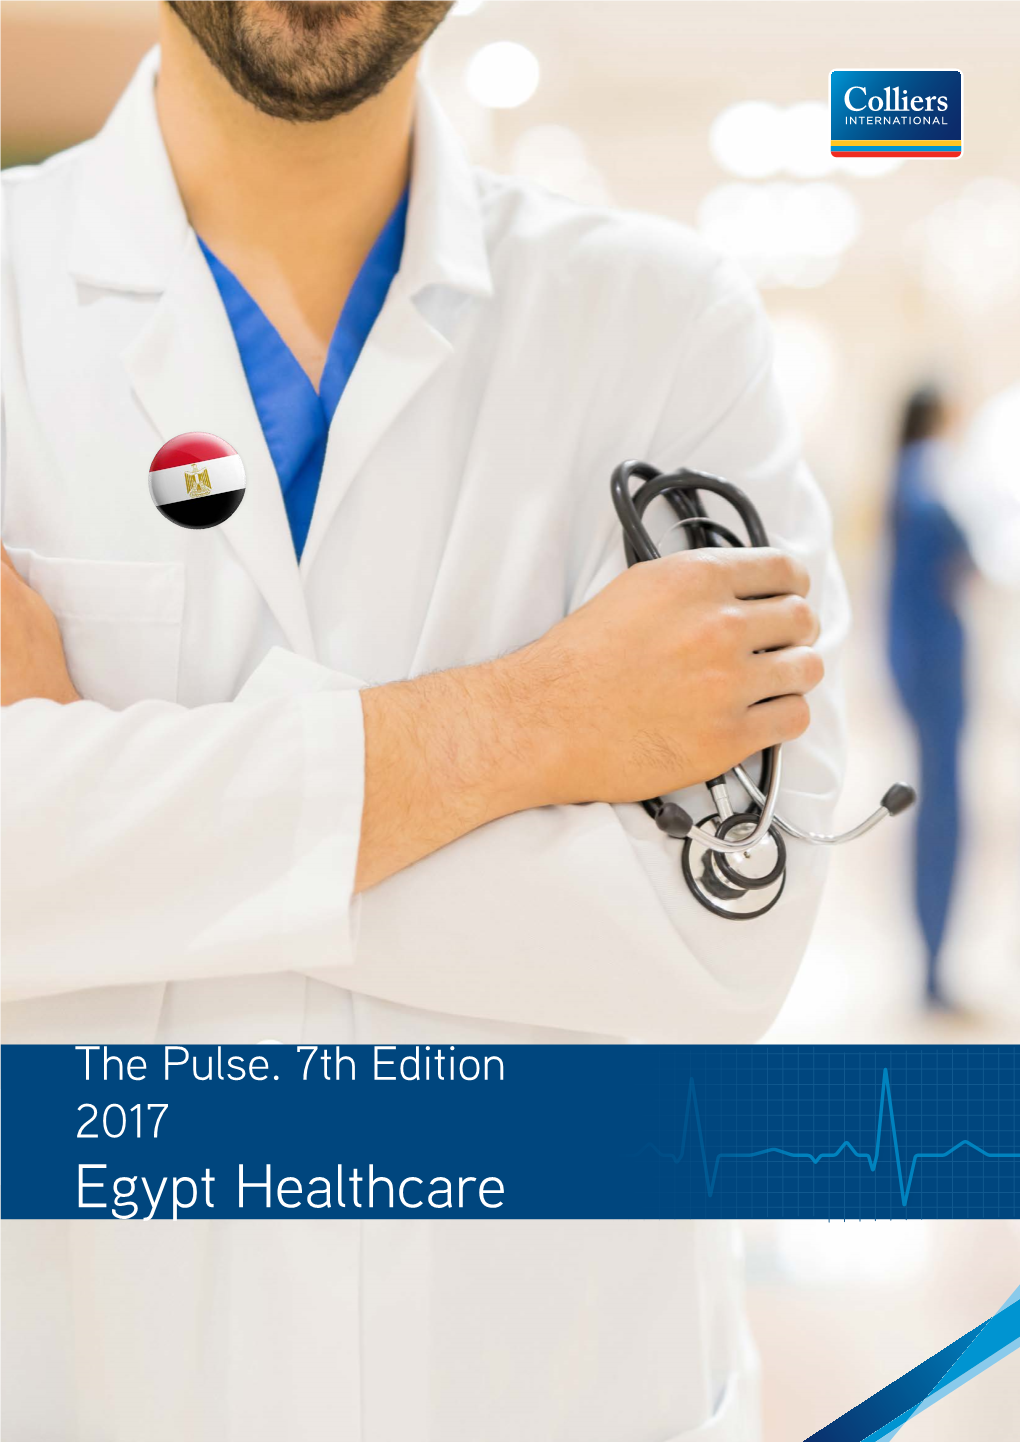 Egypt Healthcare GENERAL HOSPITALS CLINICS